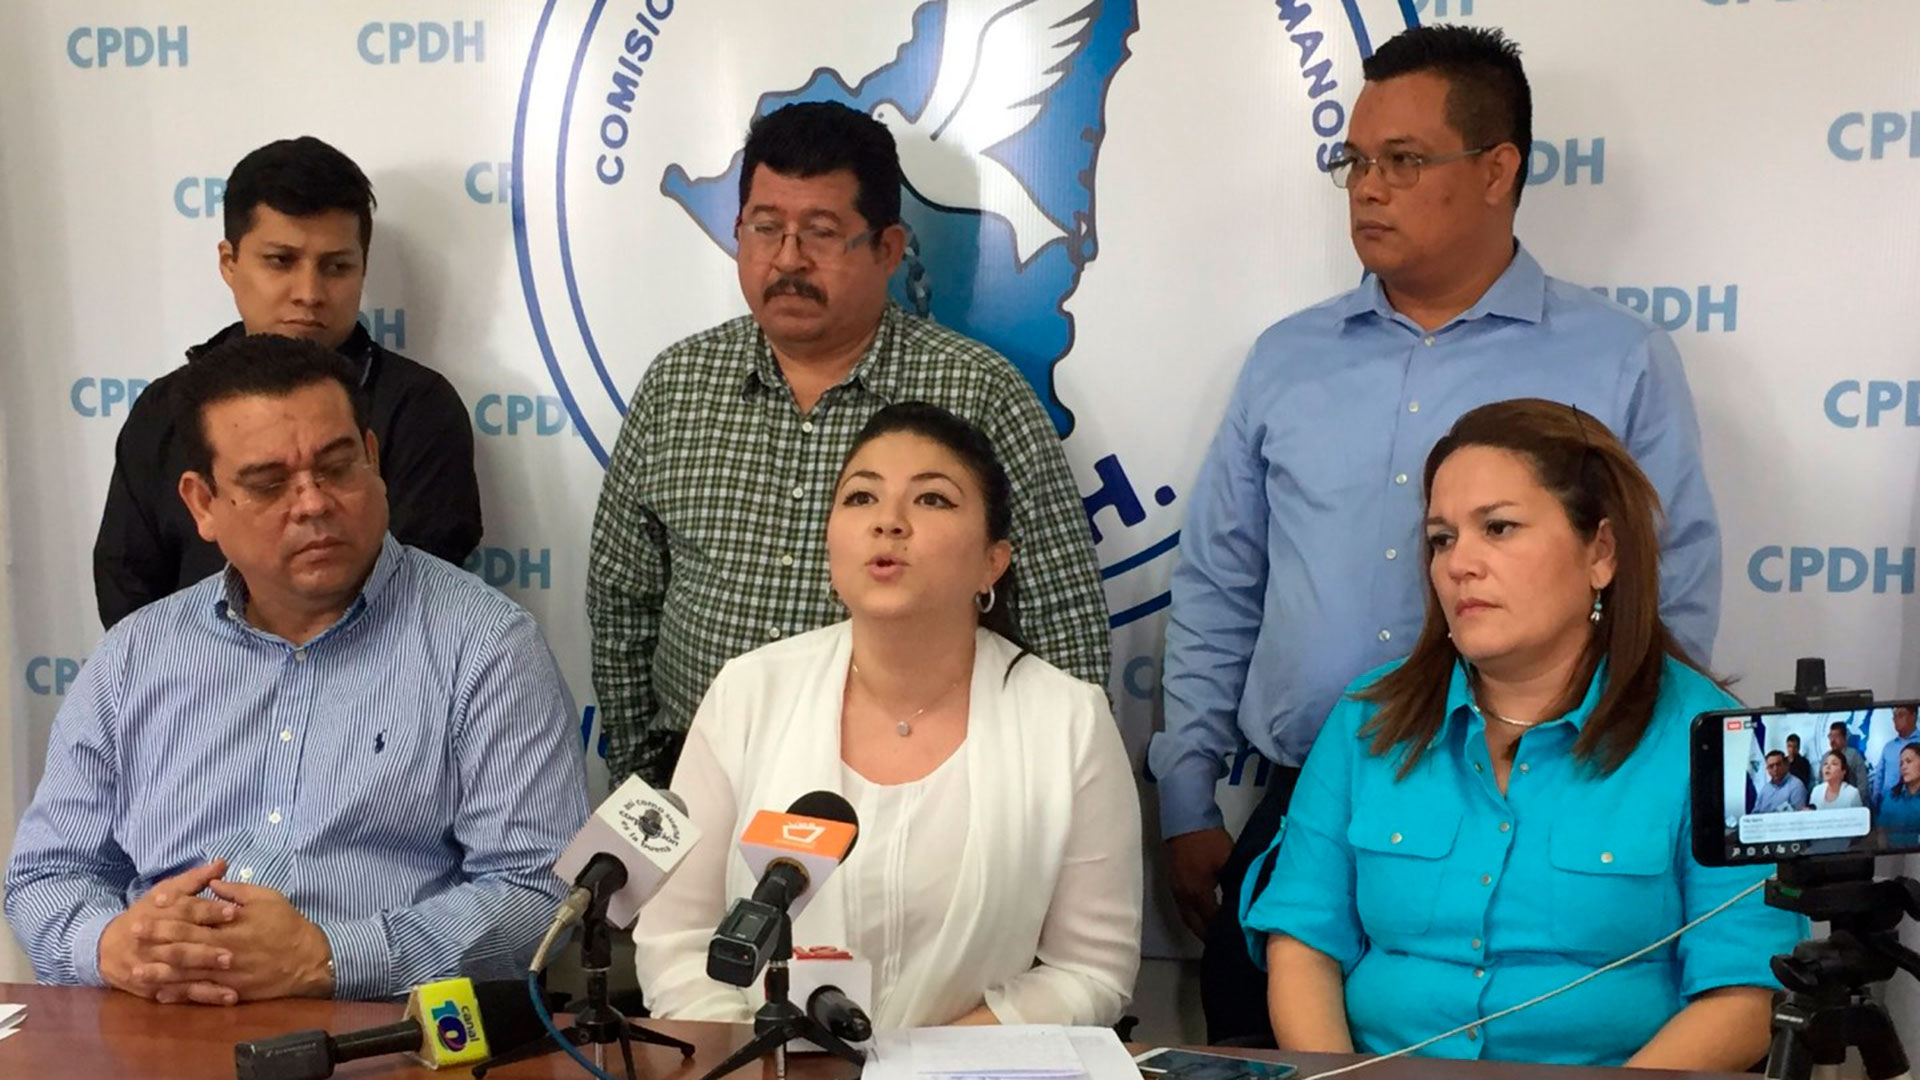 Exilio, cierres y detenciones ha aplicado Daniel Ortega contra los defensores de derechos humanos. En la gráfica de archivo, a la izquierda Marcos Carmona, director de la recién cerrada CPDH, y al centro María Oviedo, encarcelada por el regimen desde julio pasado.